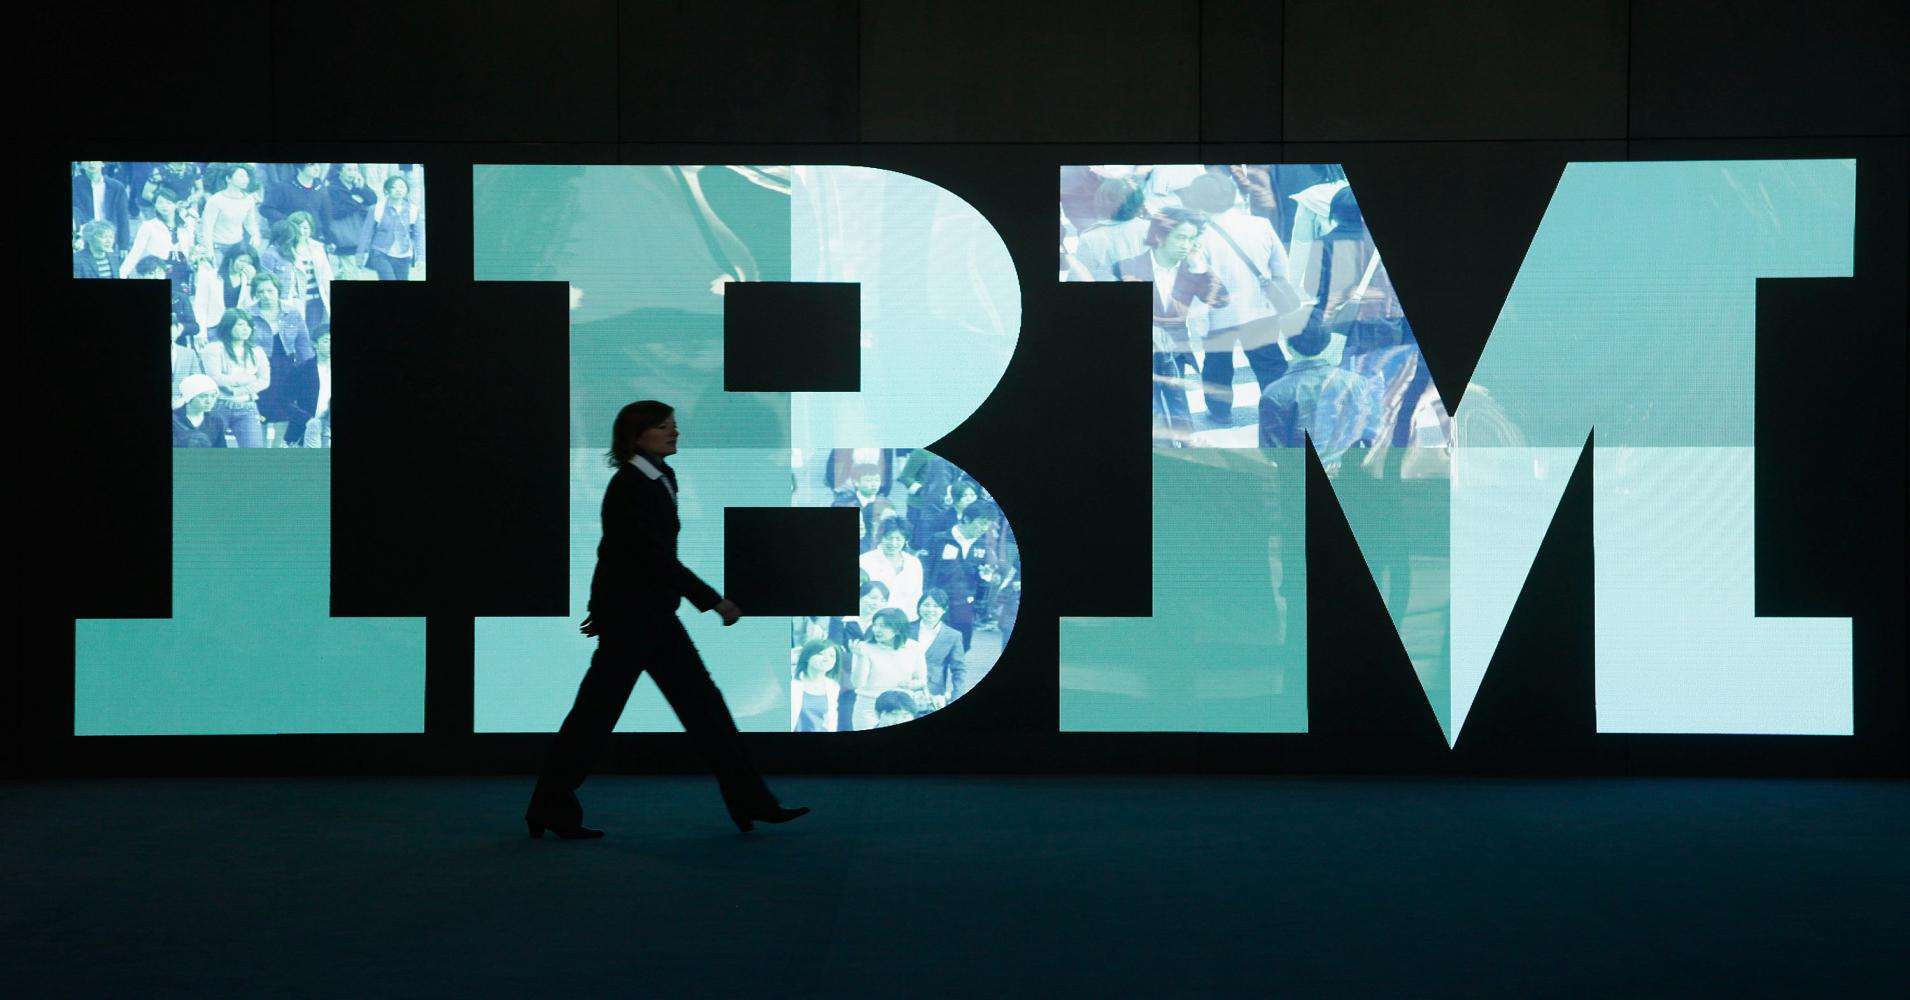 1911年6月16日IBM公司的前身CTR创立